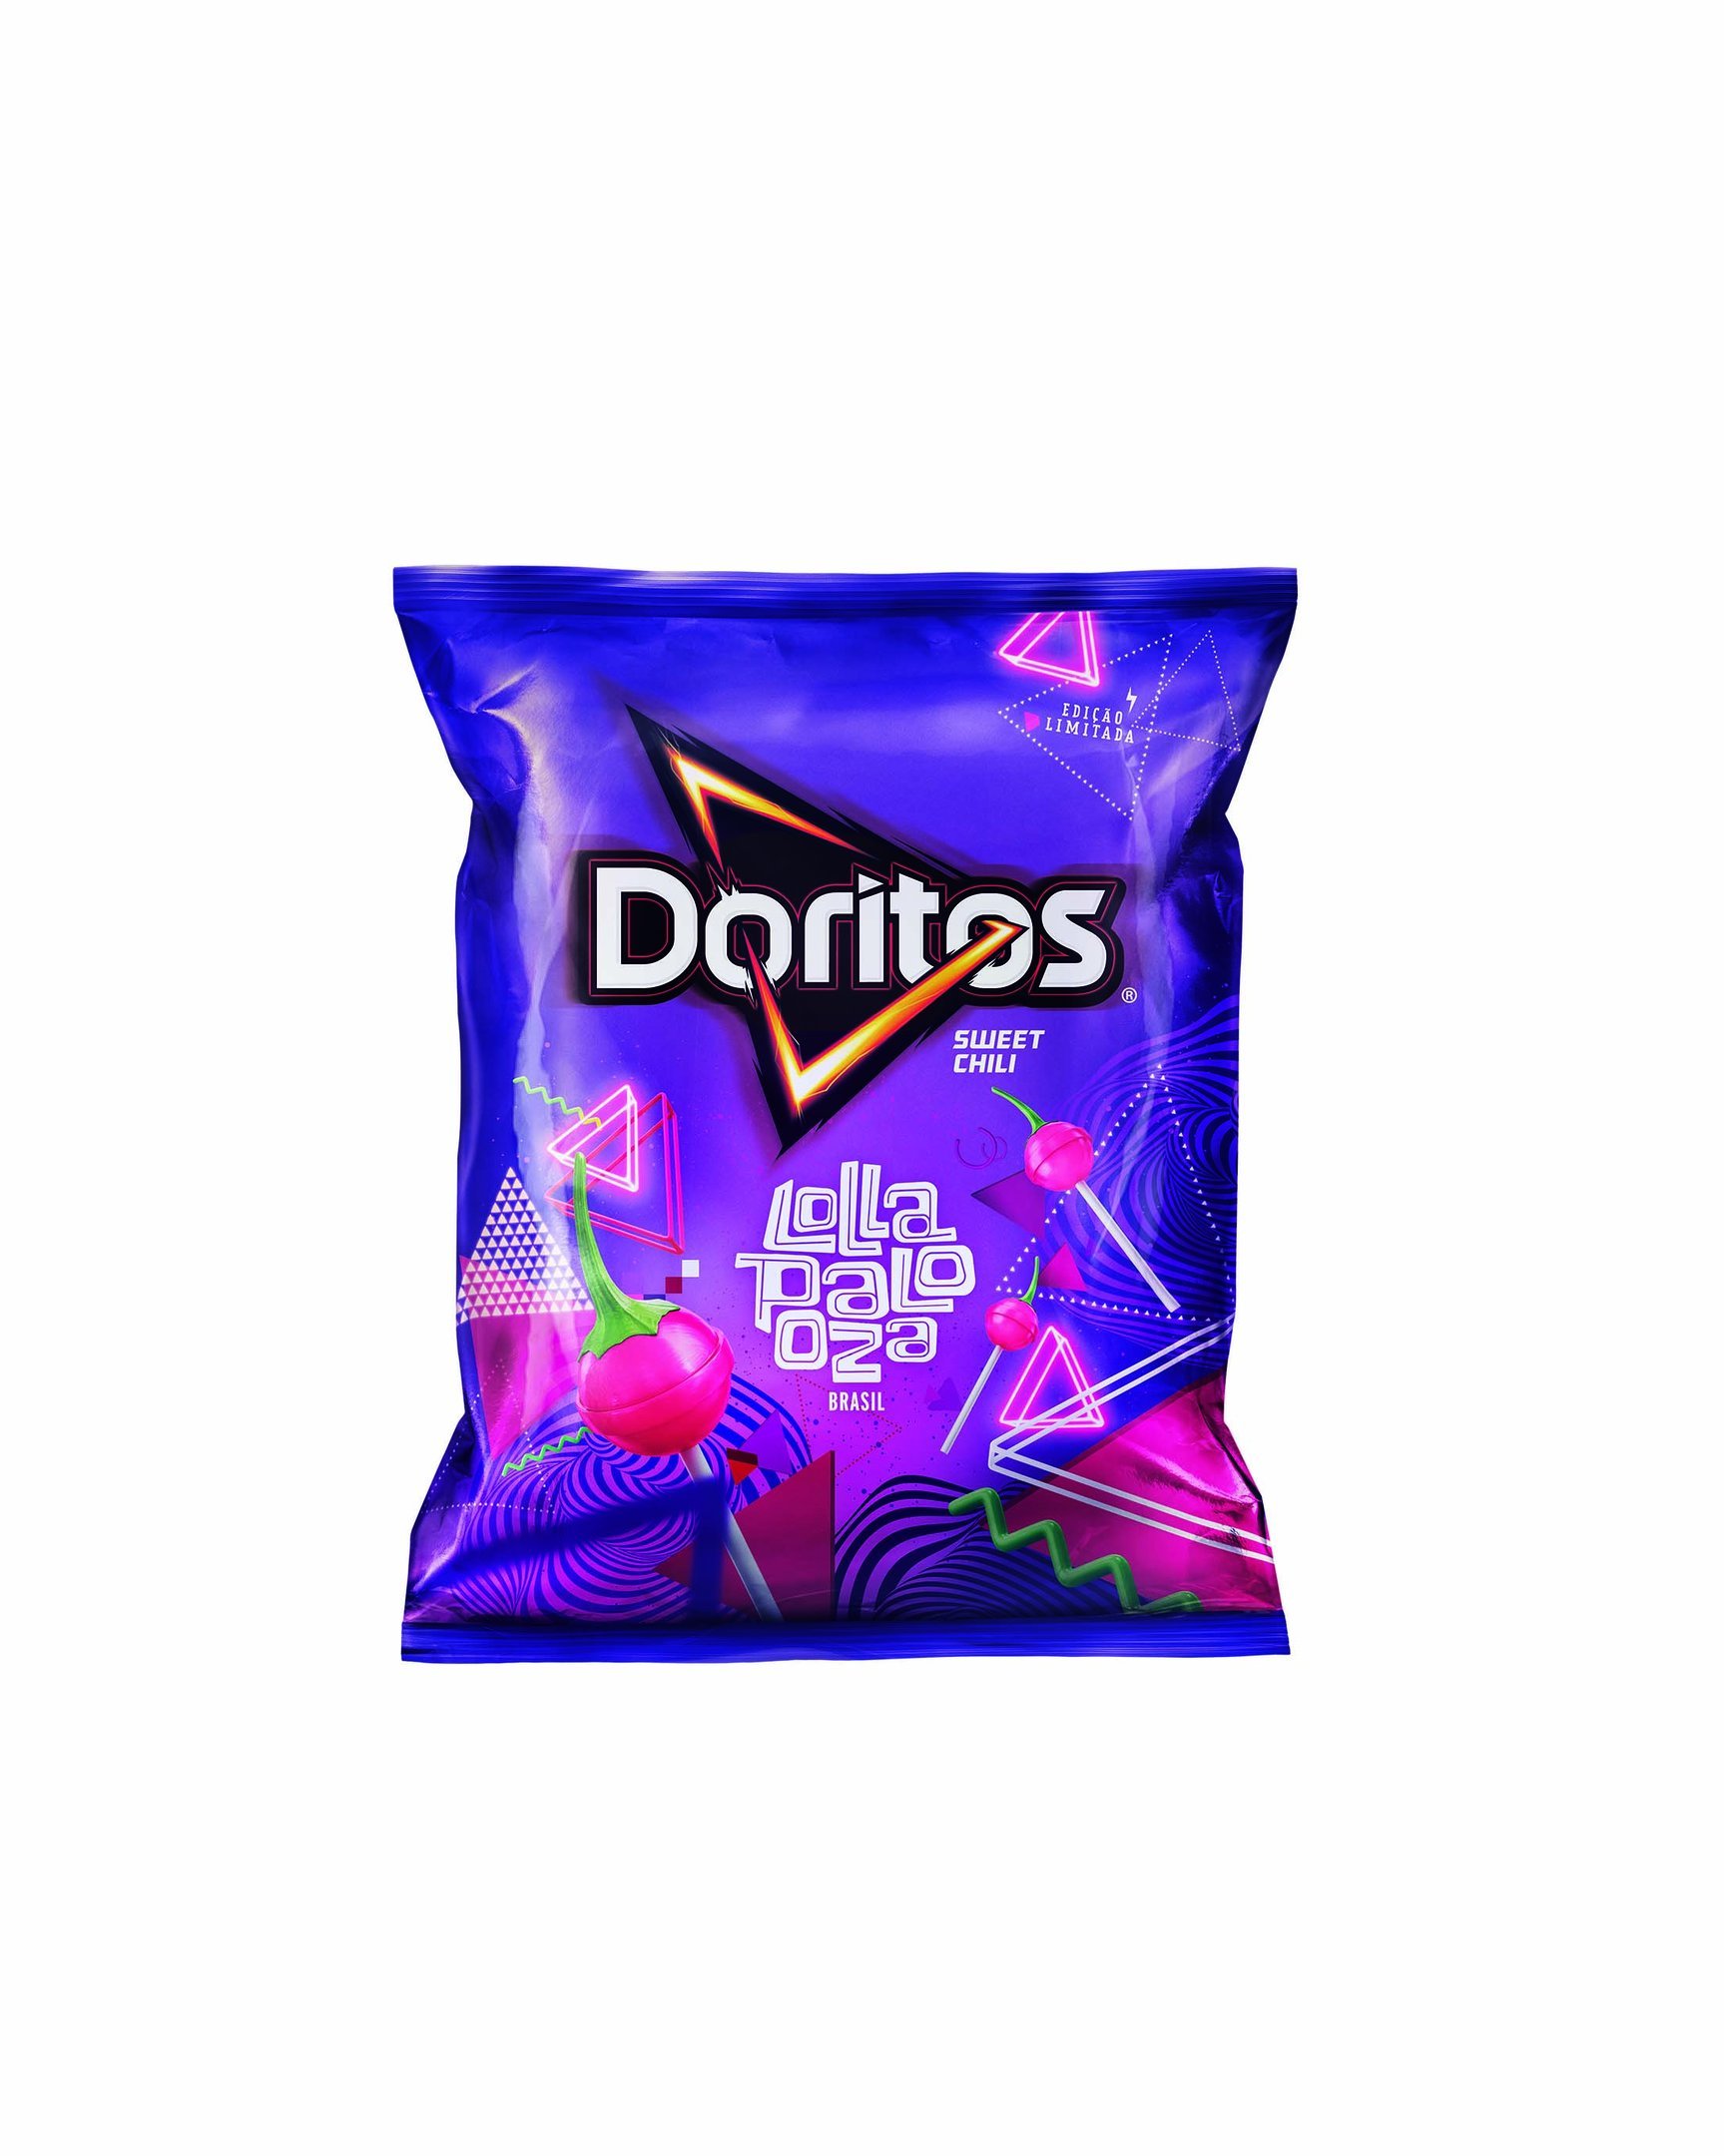 Nova embalagem de Doritos: especial para o Lollapalooza 2018